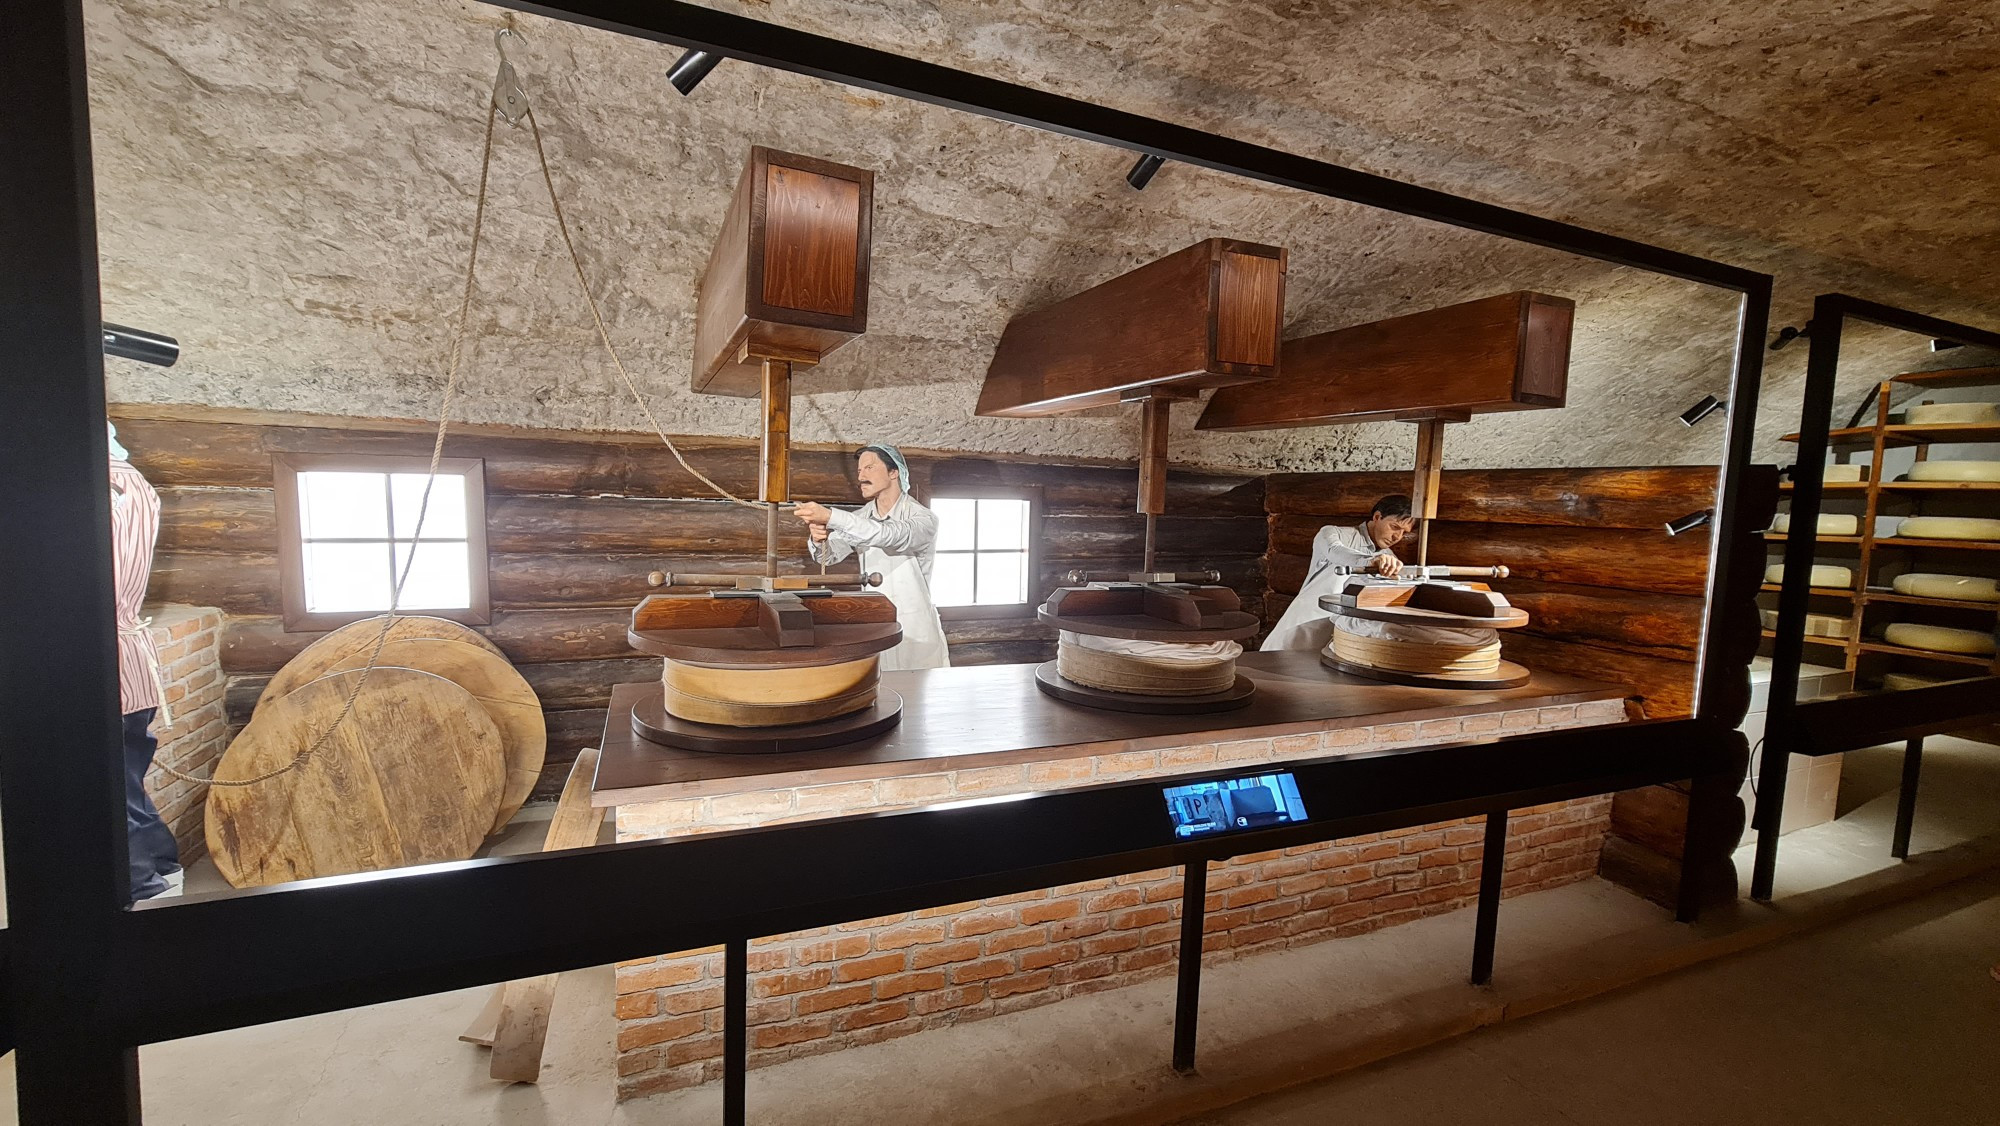 Kars Peynir Müzesi, Turkey